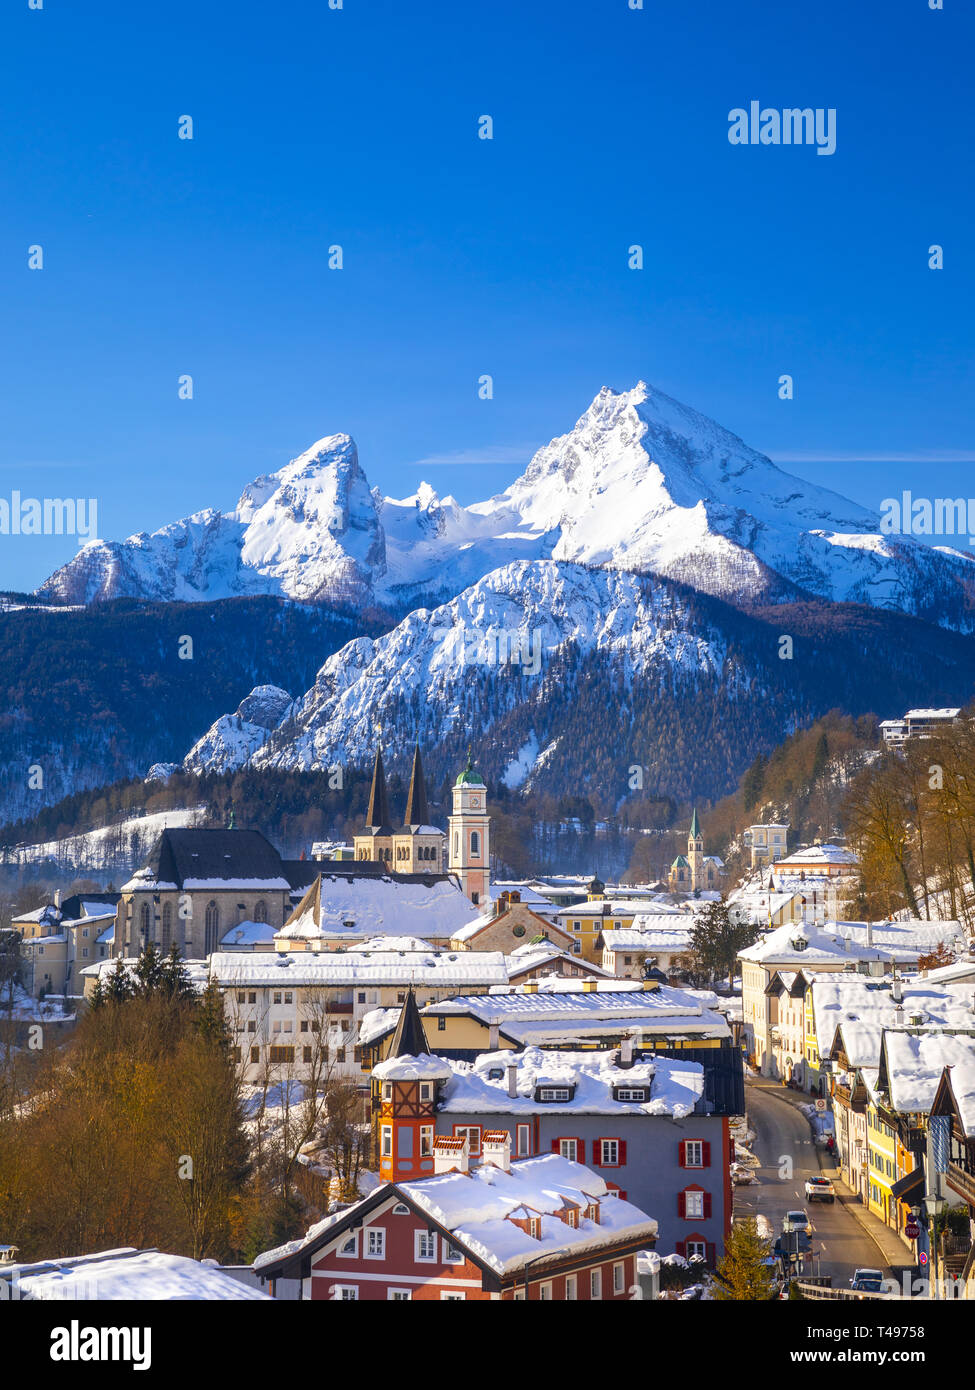 Ville historique de Berchtesgaden avec célèbre montagne Watzmann en arrière-plan, le parc national de Berchtesgaden, Allemagne Banque D'Images